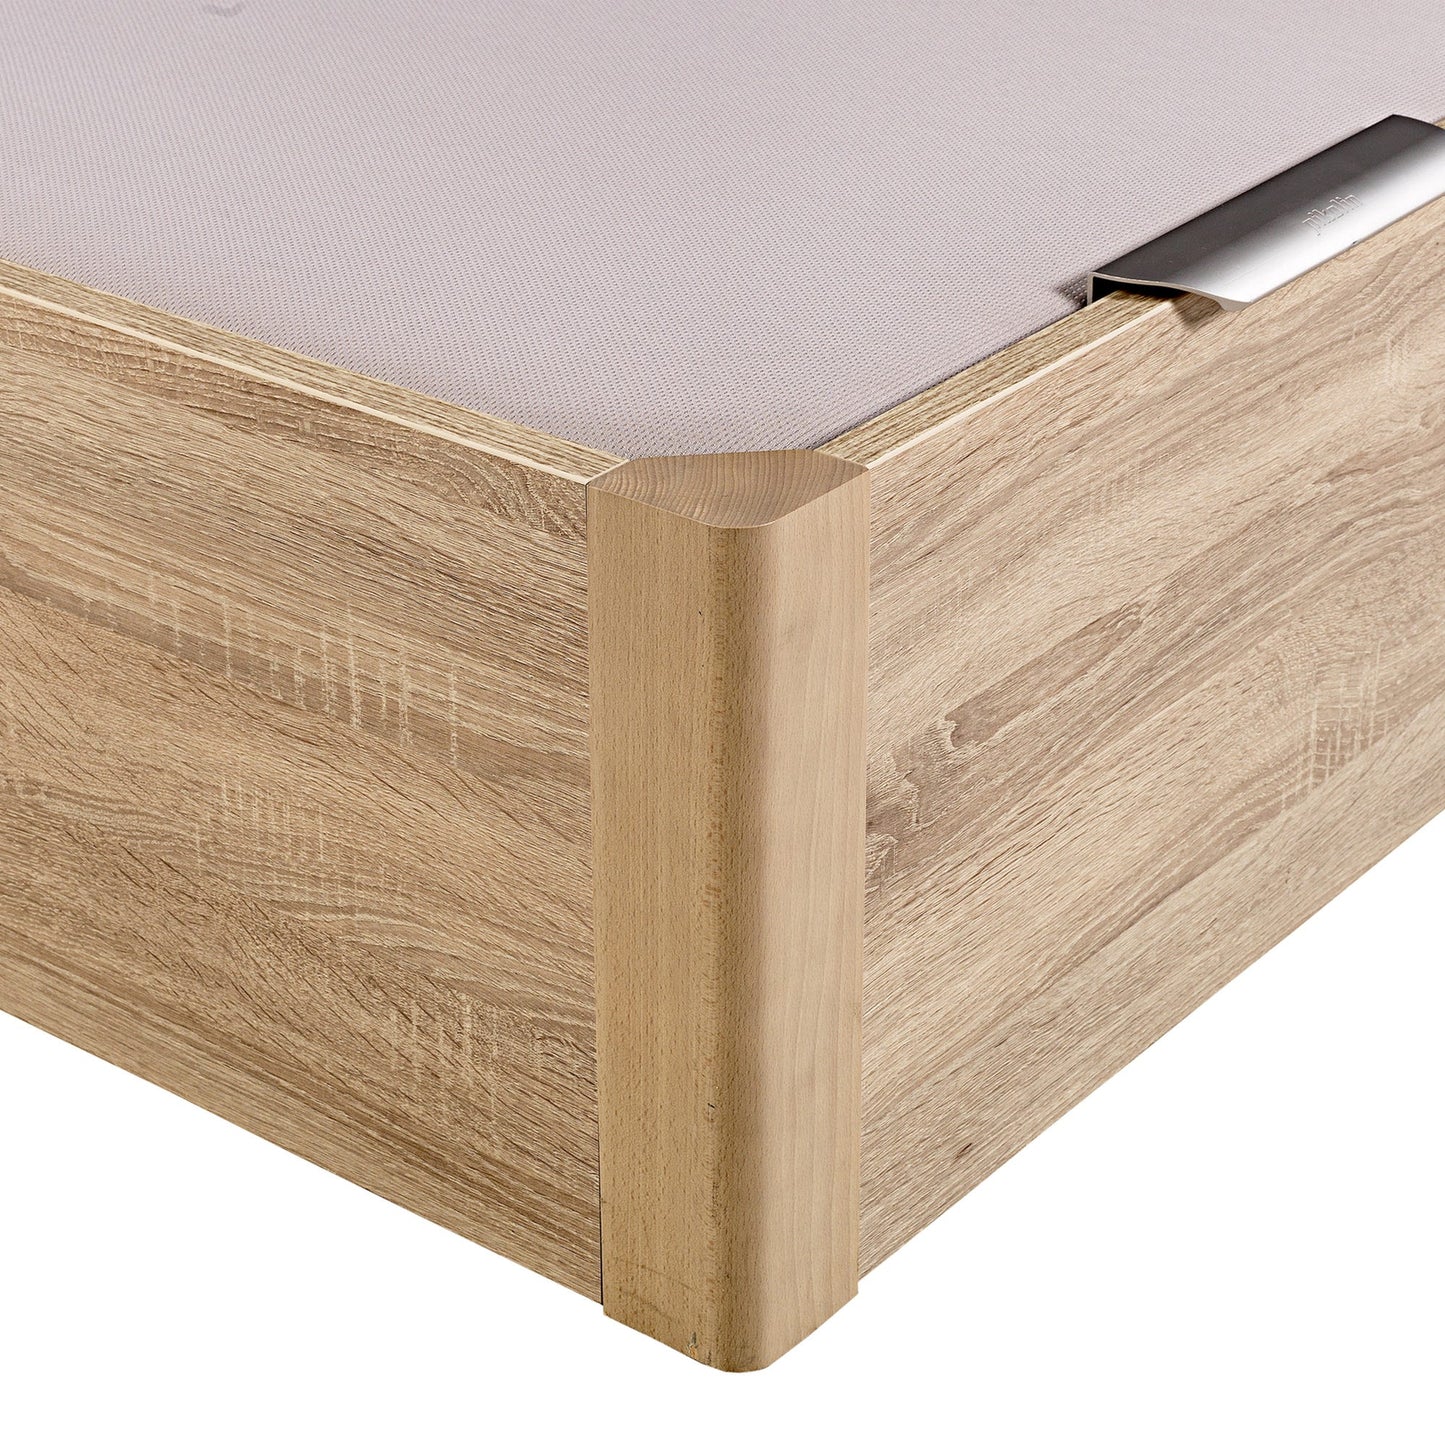 Canapé abatible de madera de alta capacidad tapa doble de color natural - DESIGN - 160x190